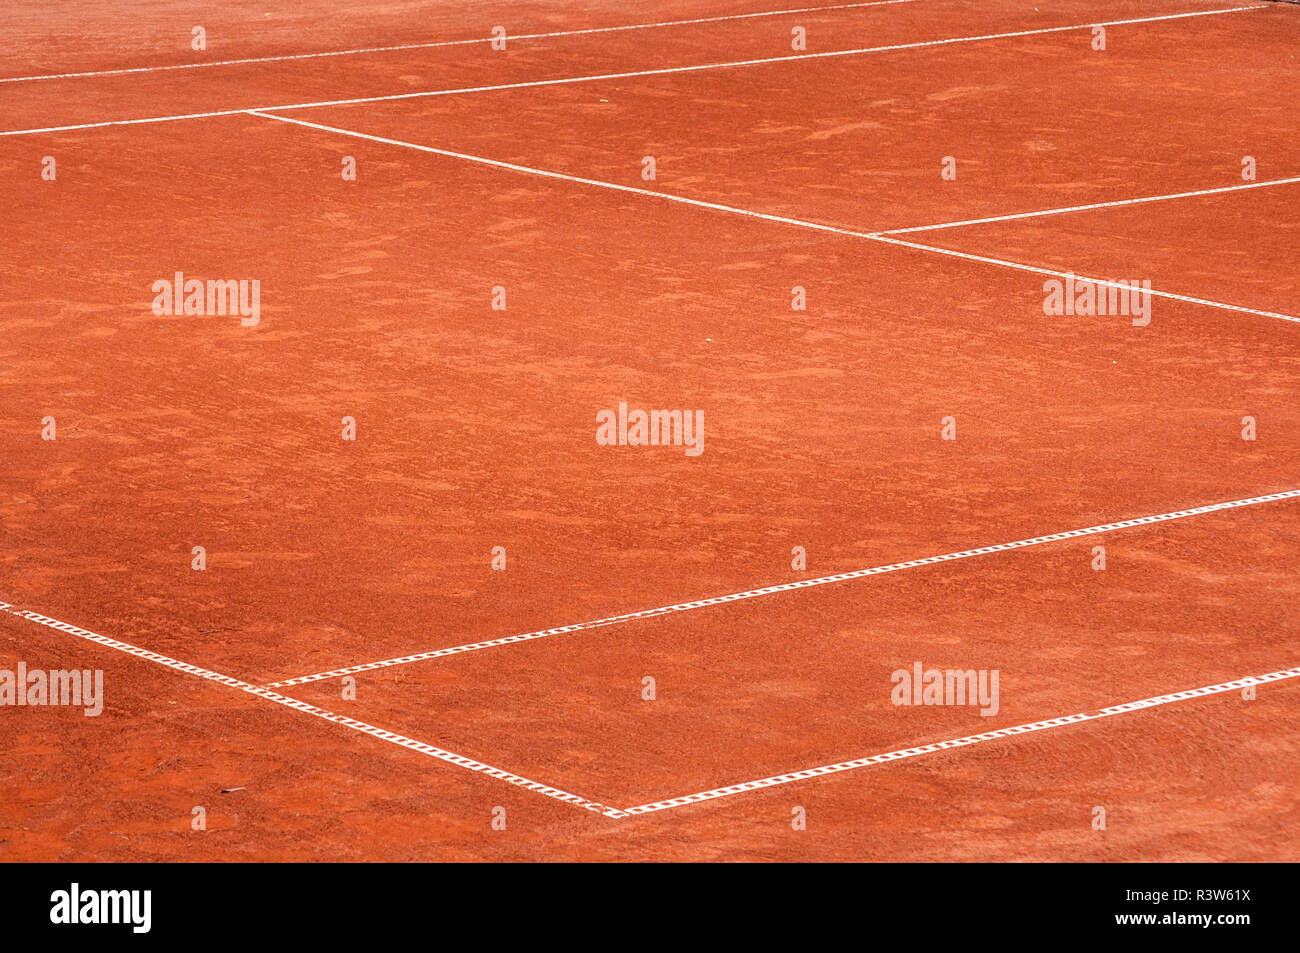 Teil der leeren Red Clay Tennisplatz Spielplatz Oberfläche mit weißen Linien Nahaufnahme Stockfoto